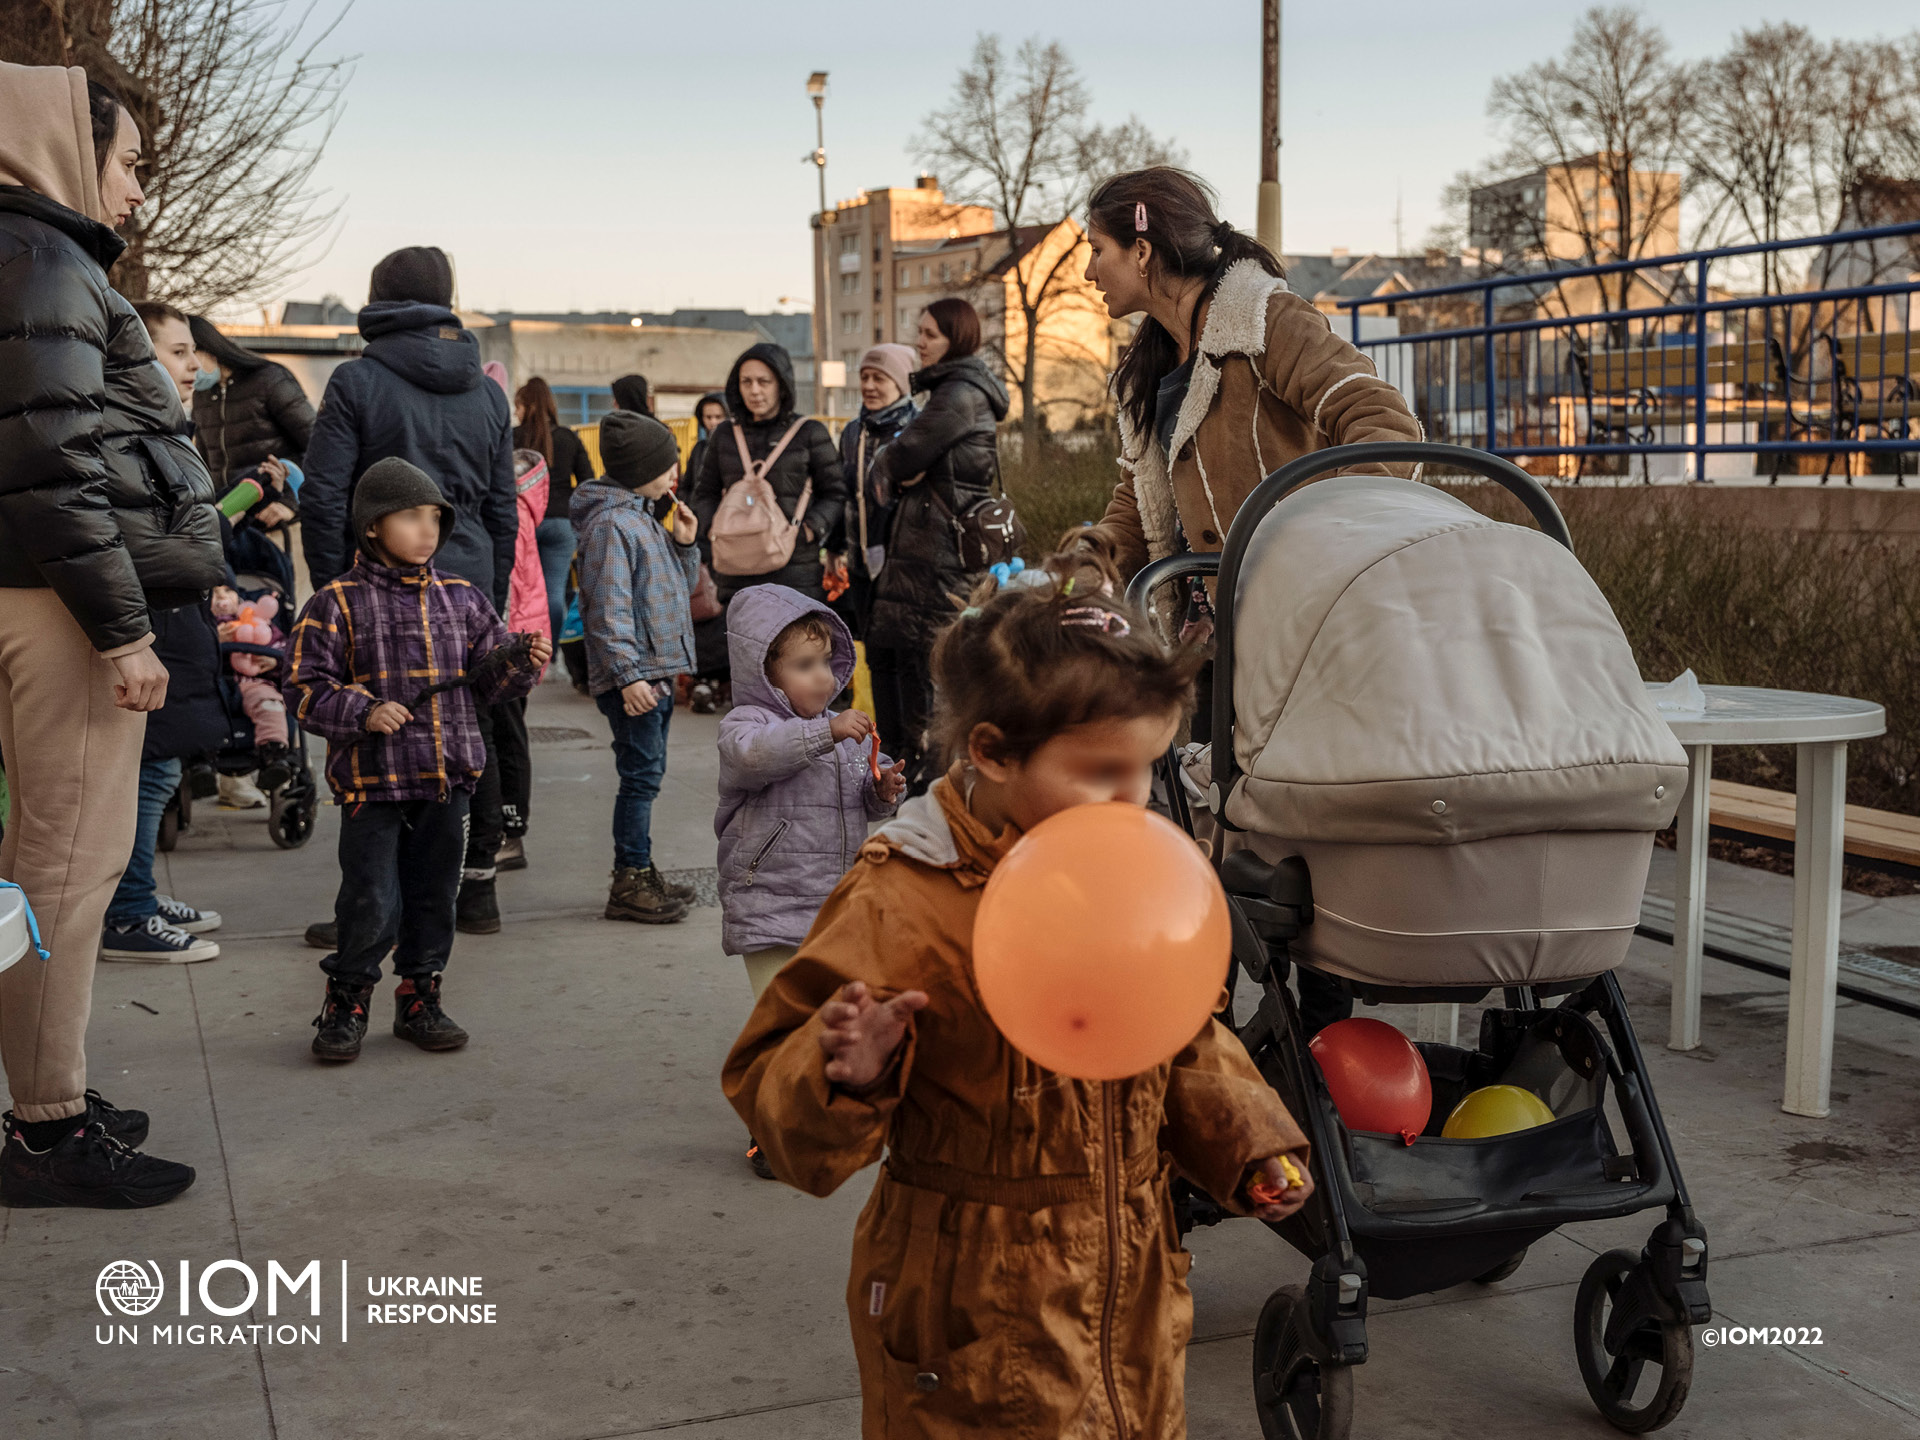 Pomoc IOM zraniteľným osobám z Ukrajiny s dočasným ubytovaním. Foto © Medzinárodná organizácia pre migráciu (IOM) 2022.